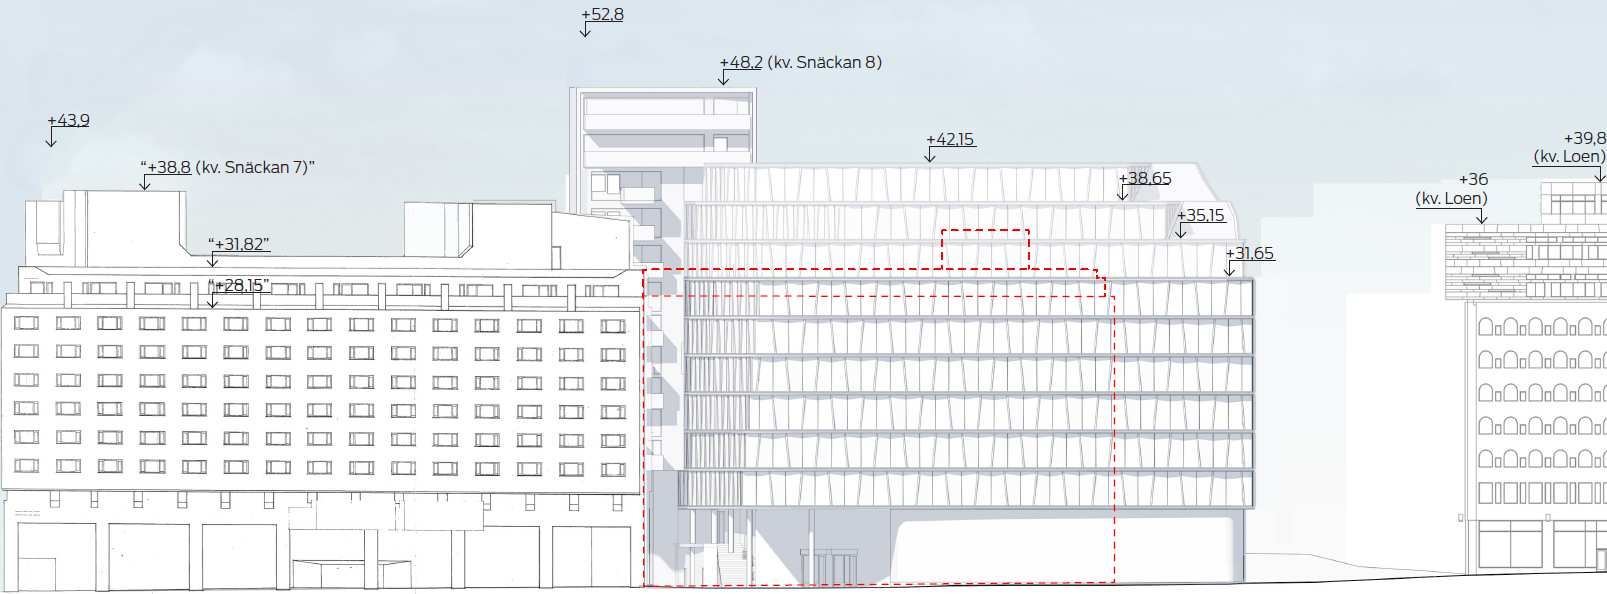 SID 6 (11) Gatuvyer med föreslagen utökning av byggnadsvolymen markerad gul och ny totalhöjd enligt svart linje. Befintlig byggnadsvolym markerad med ljus yta och streckad röd linje.